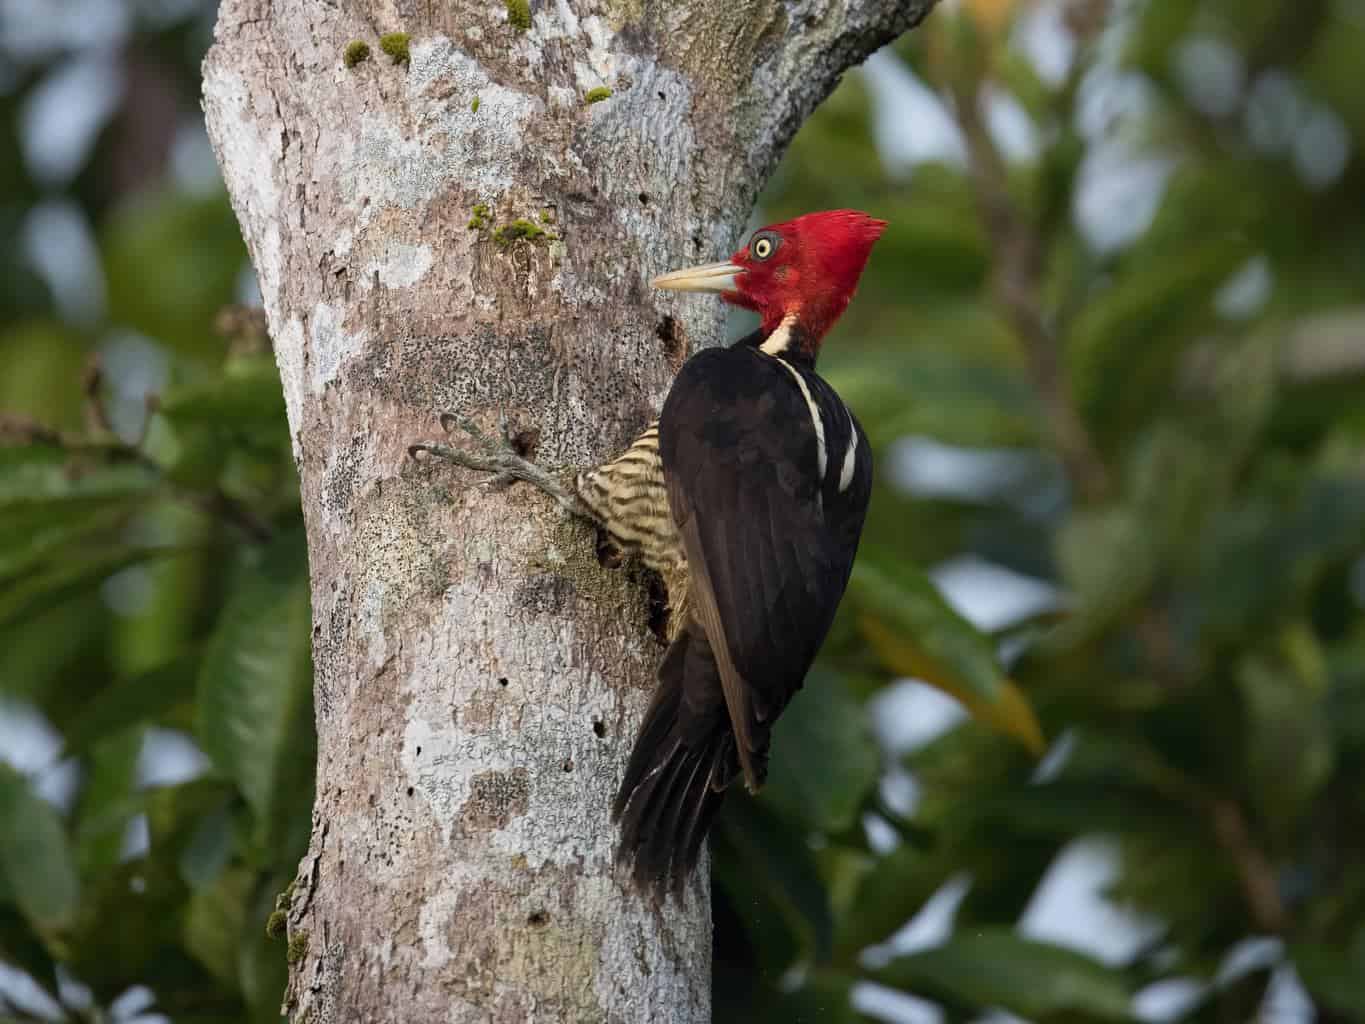 Pájaros carpinteros en Florida: 10 especies que puedes encontrar